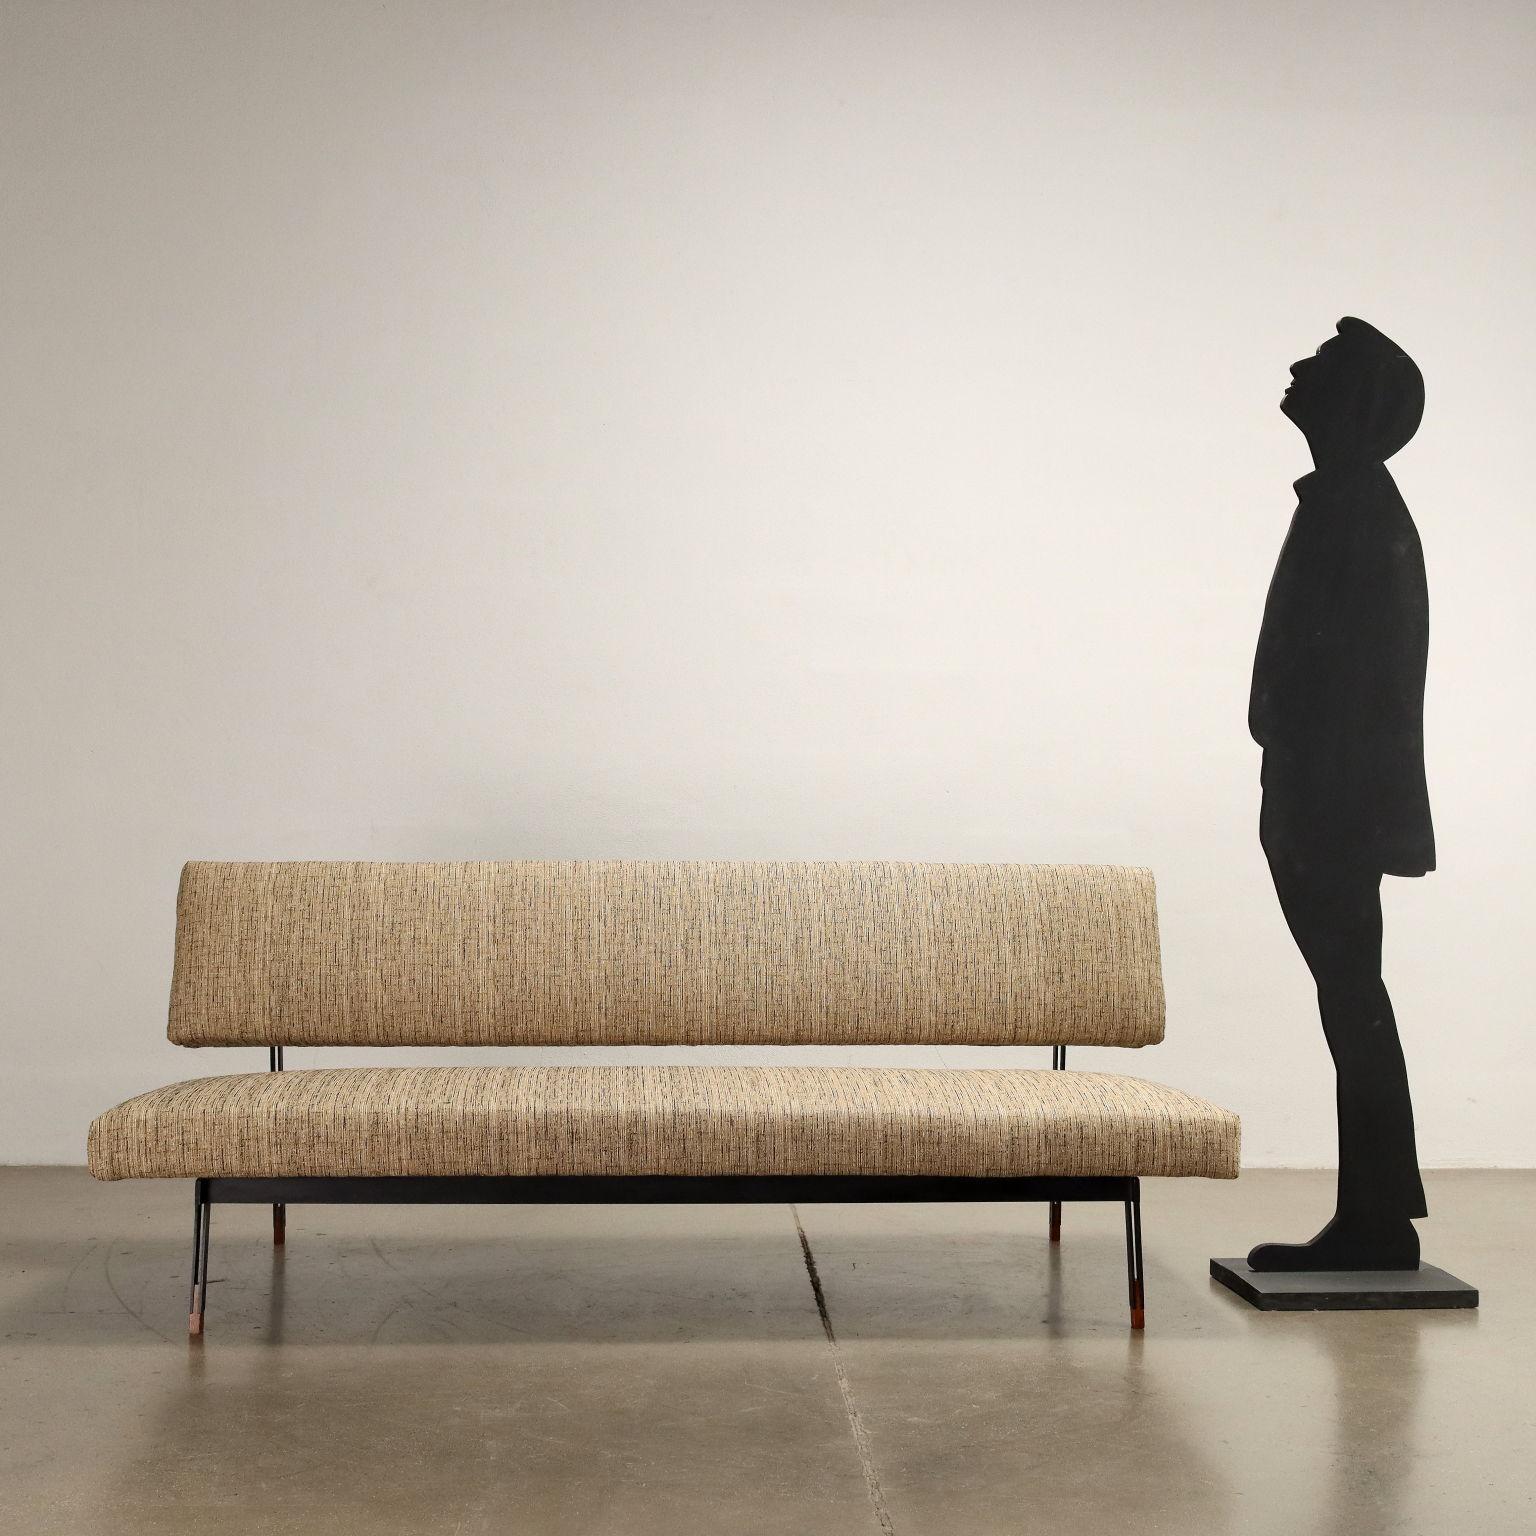 Dreisitziges Sofa, entworfen von Gianfranco Frattini und hergestellt von Cassina in den späten 1950er Jahren. Beine aus emailliertem Metall und Holz, Schaumstoffpolsterung, Stoffbezug 